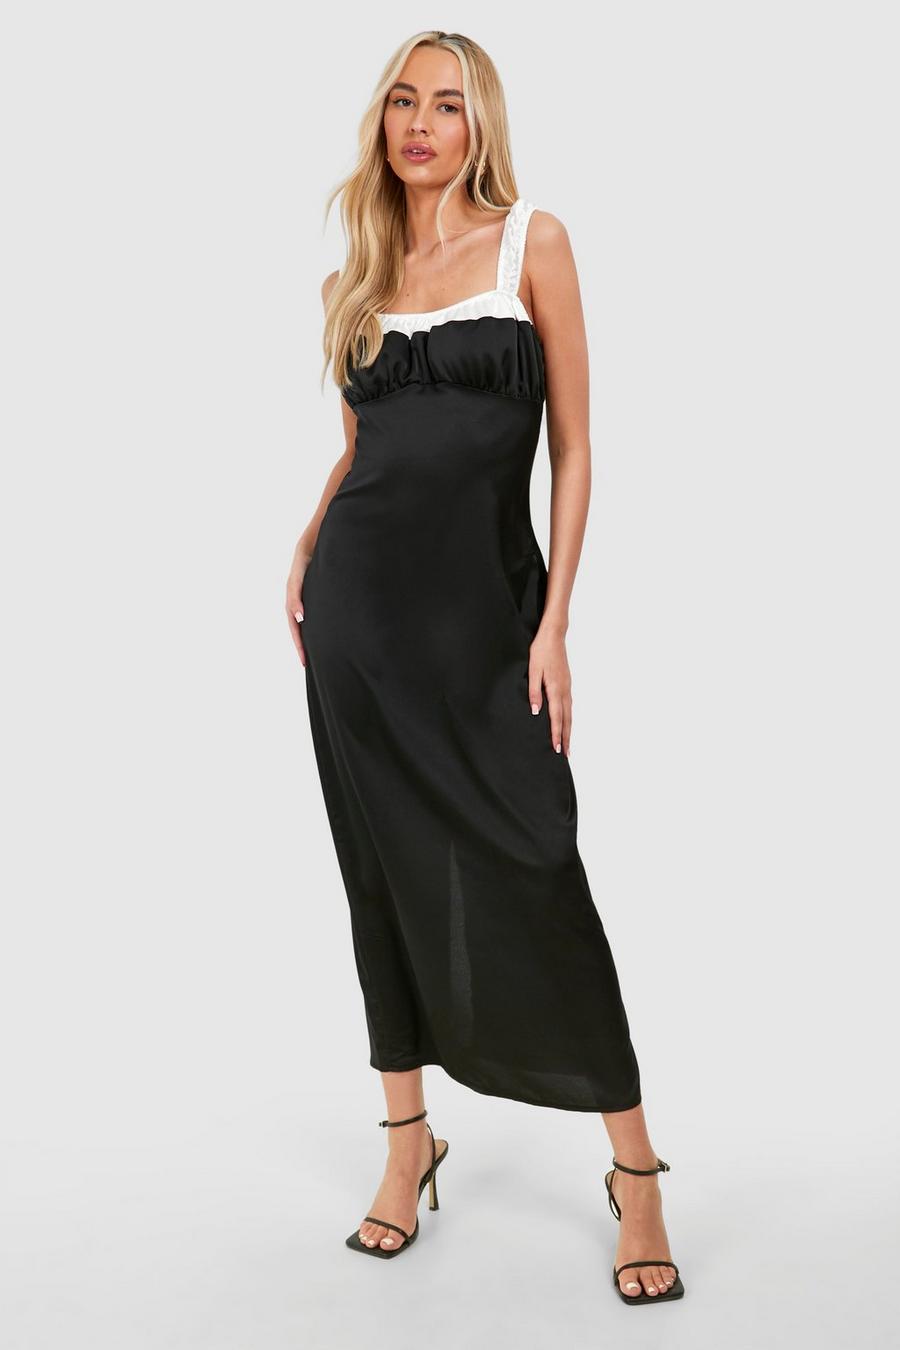 Black Tall Satin Contrast Detail Midaxi Dress